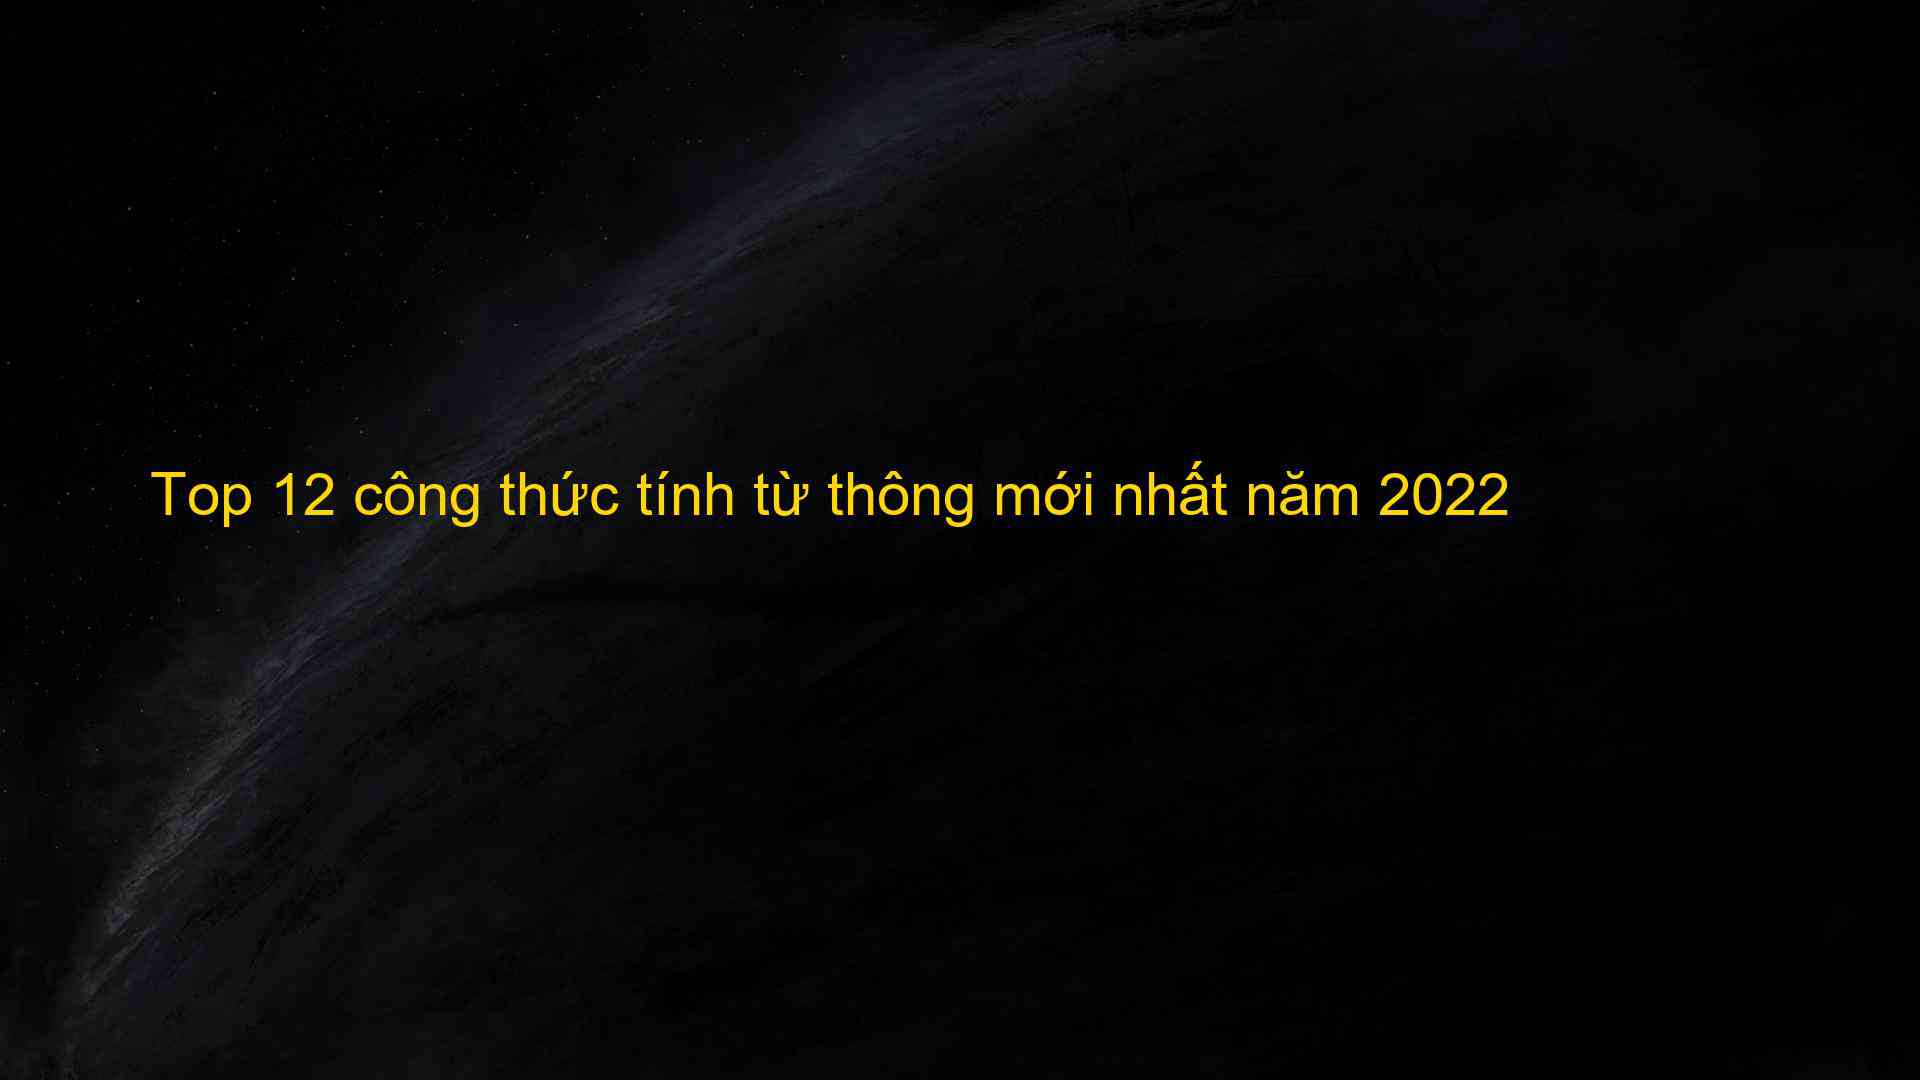 Top 12 cong thuc tinh tu thong moi nhat nam 2022 1659718847